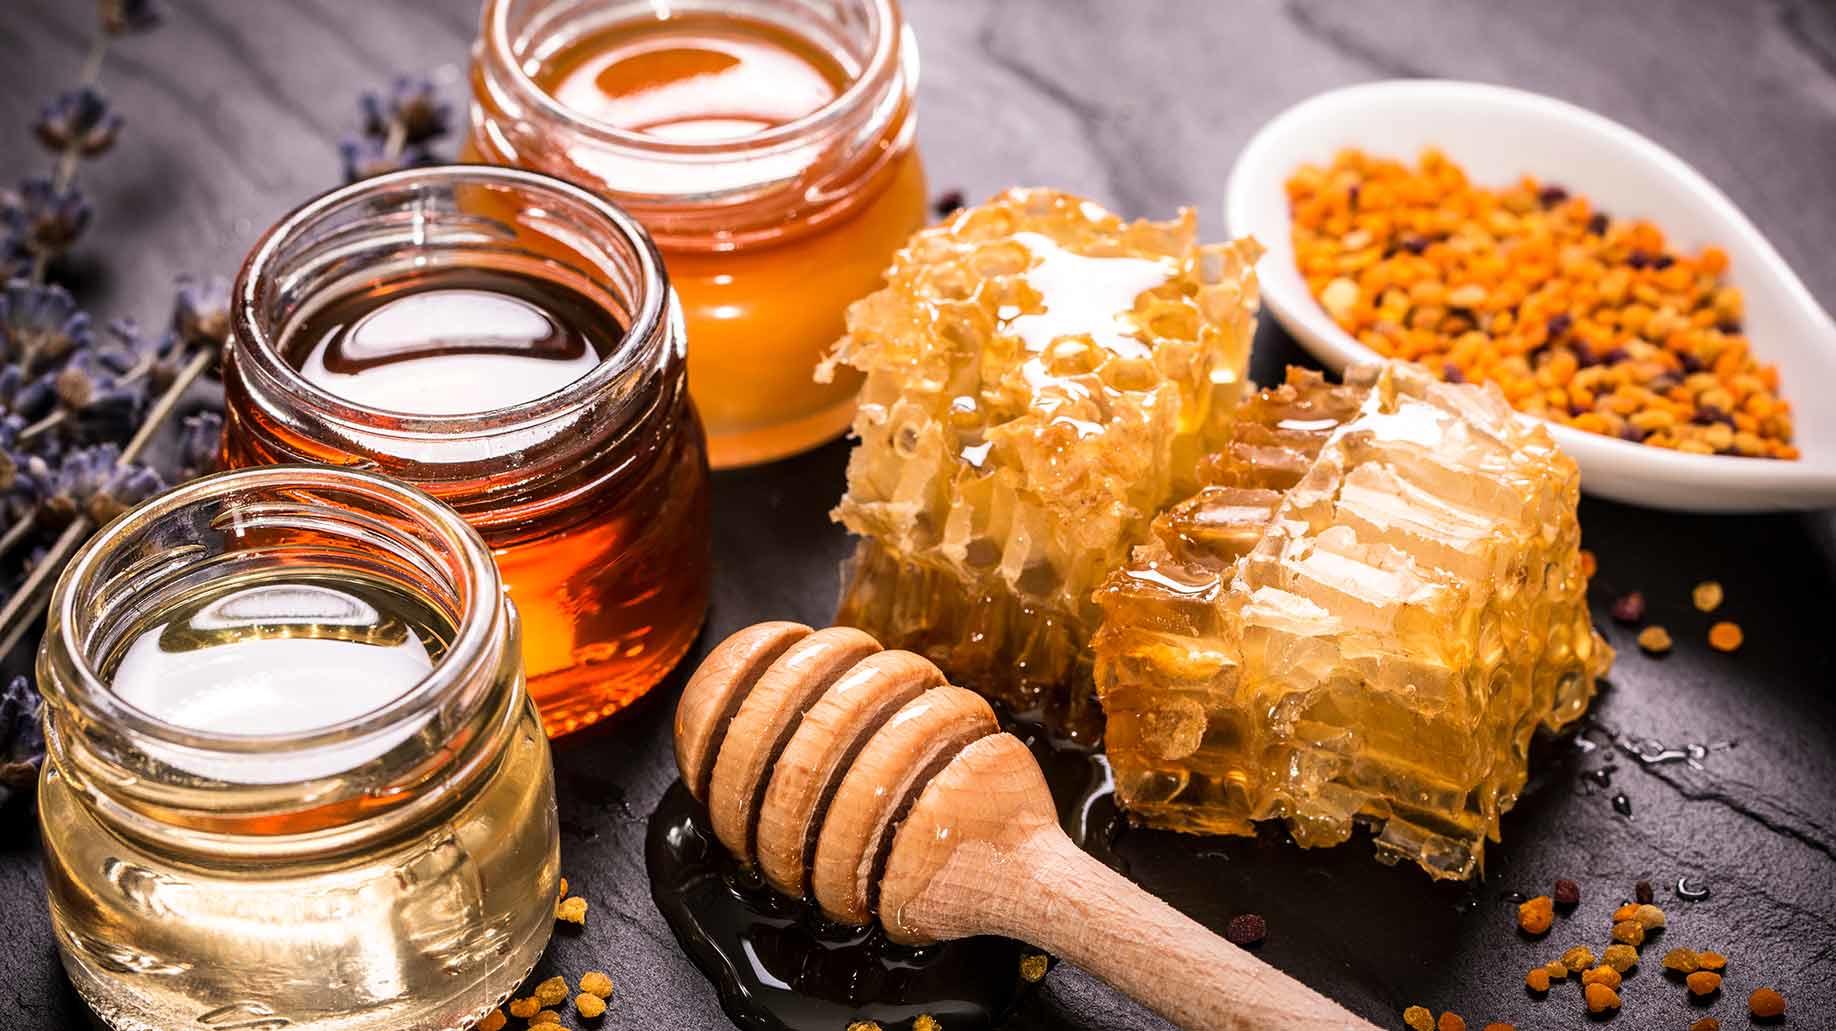 باورهای غلط درباره عسل که بهتر است بدانید